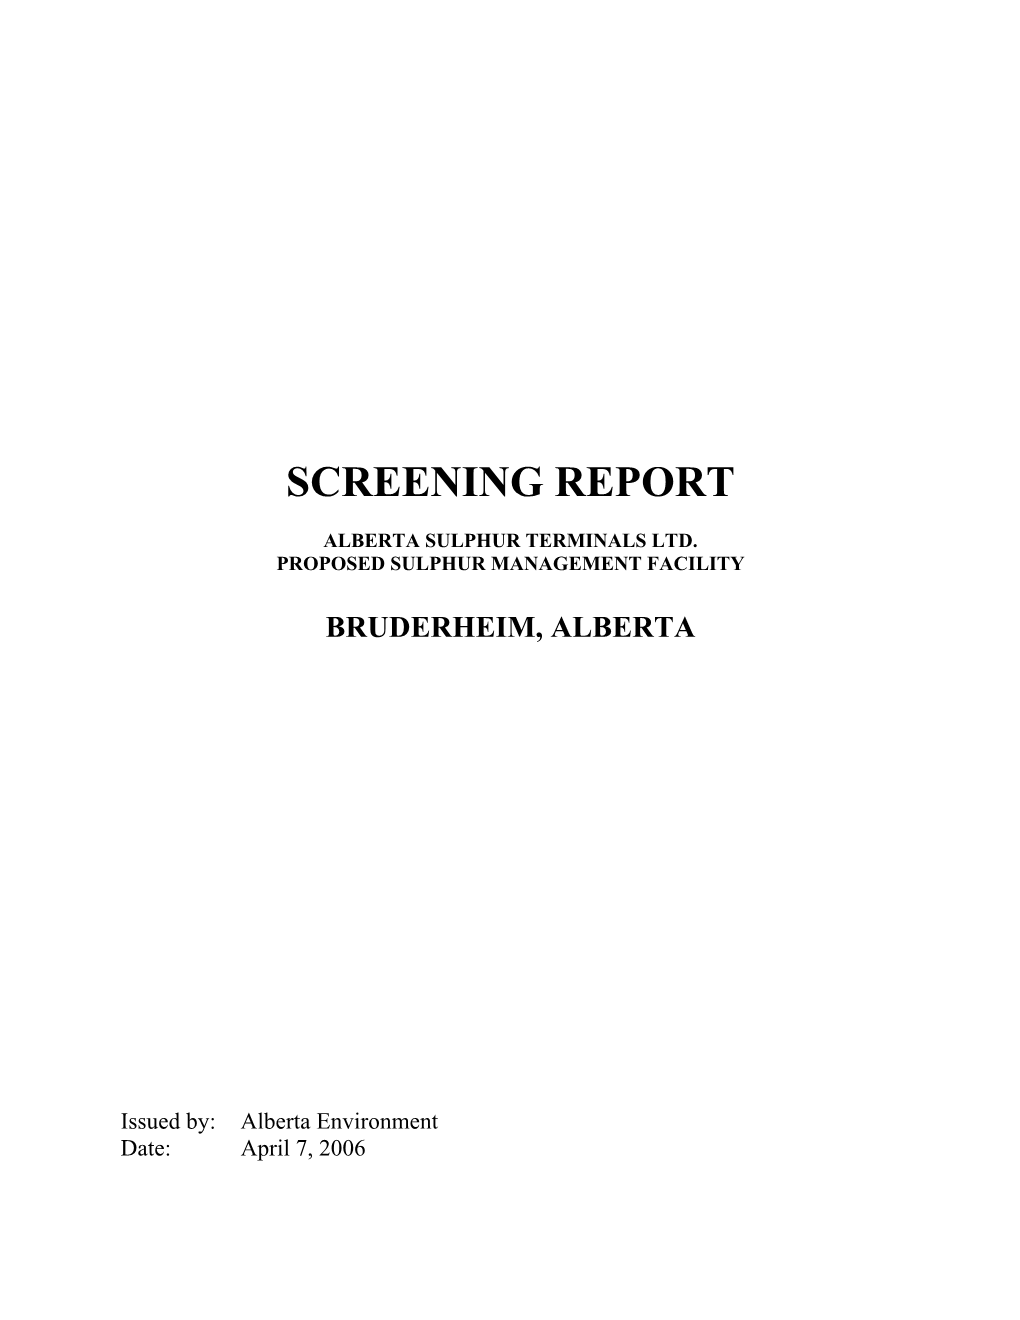 Screening Report